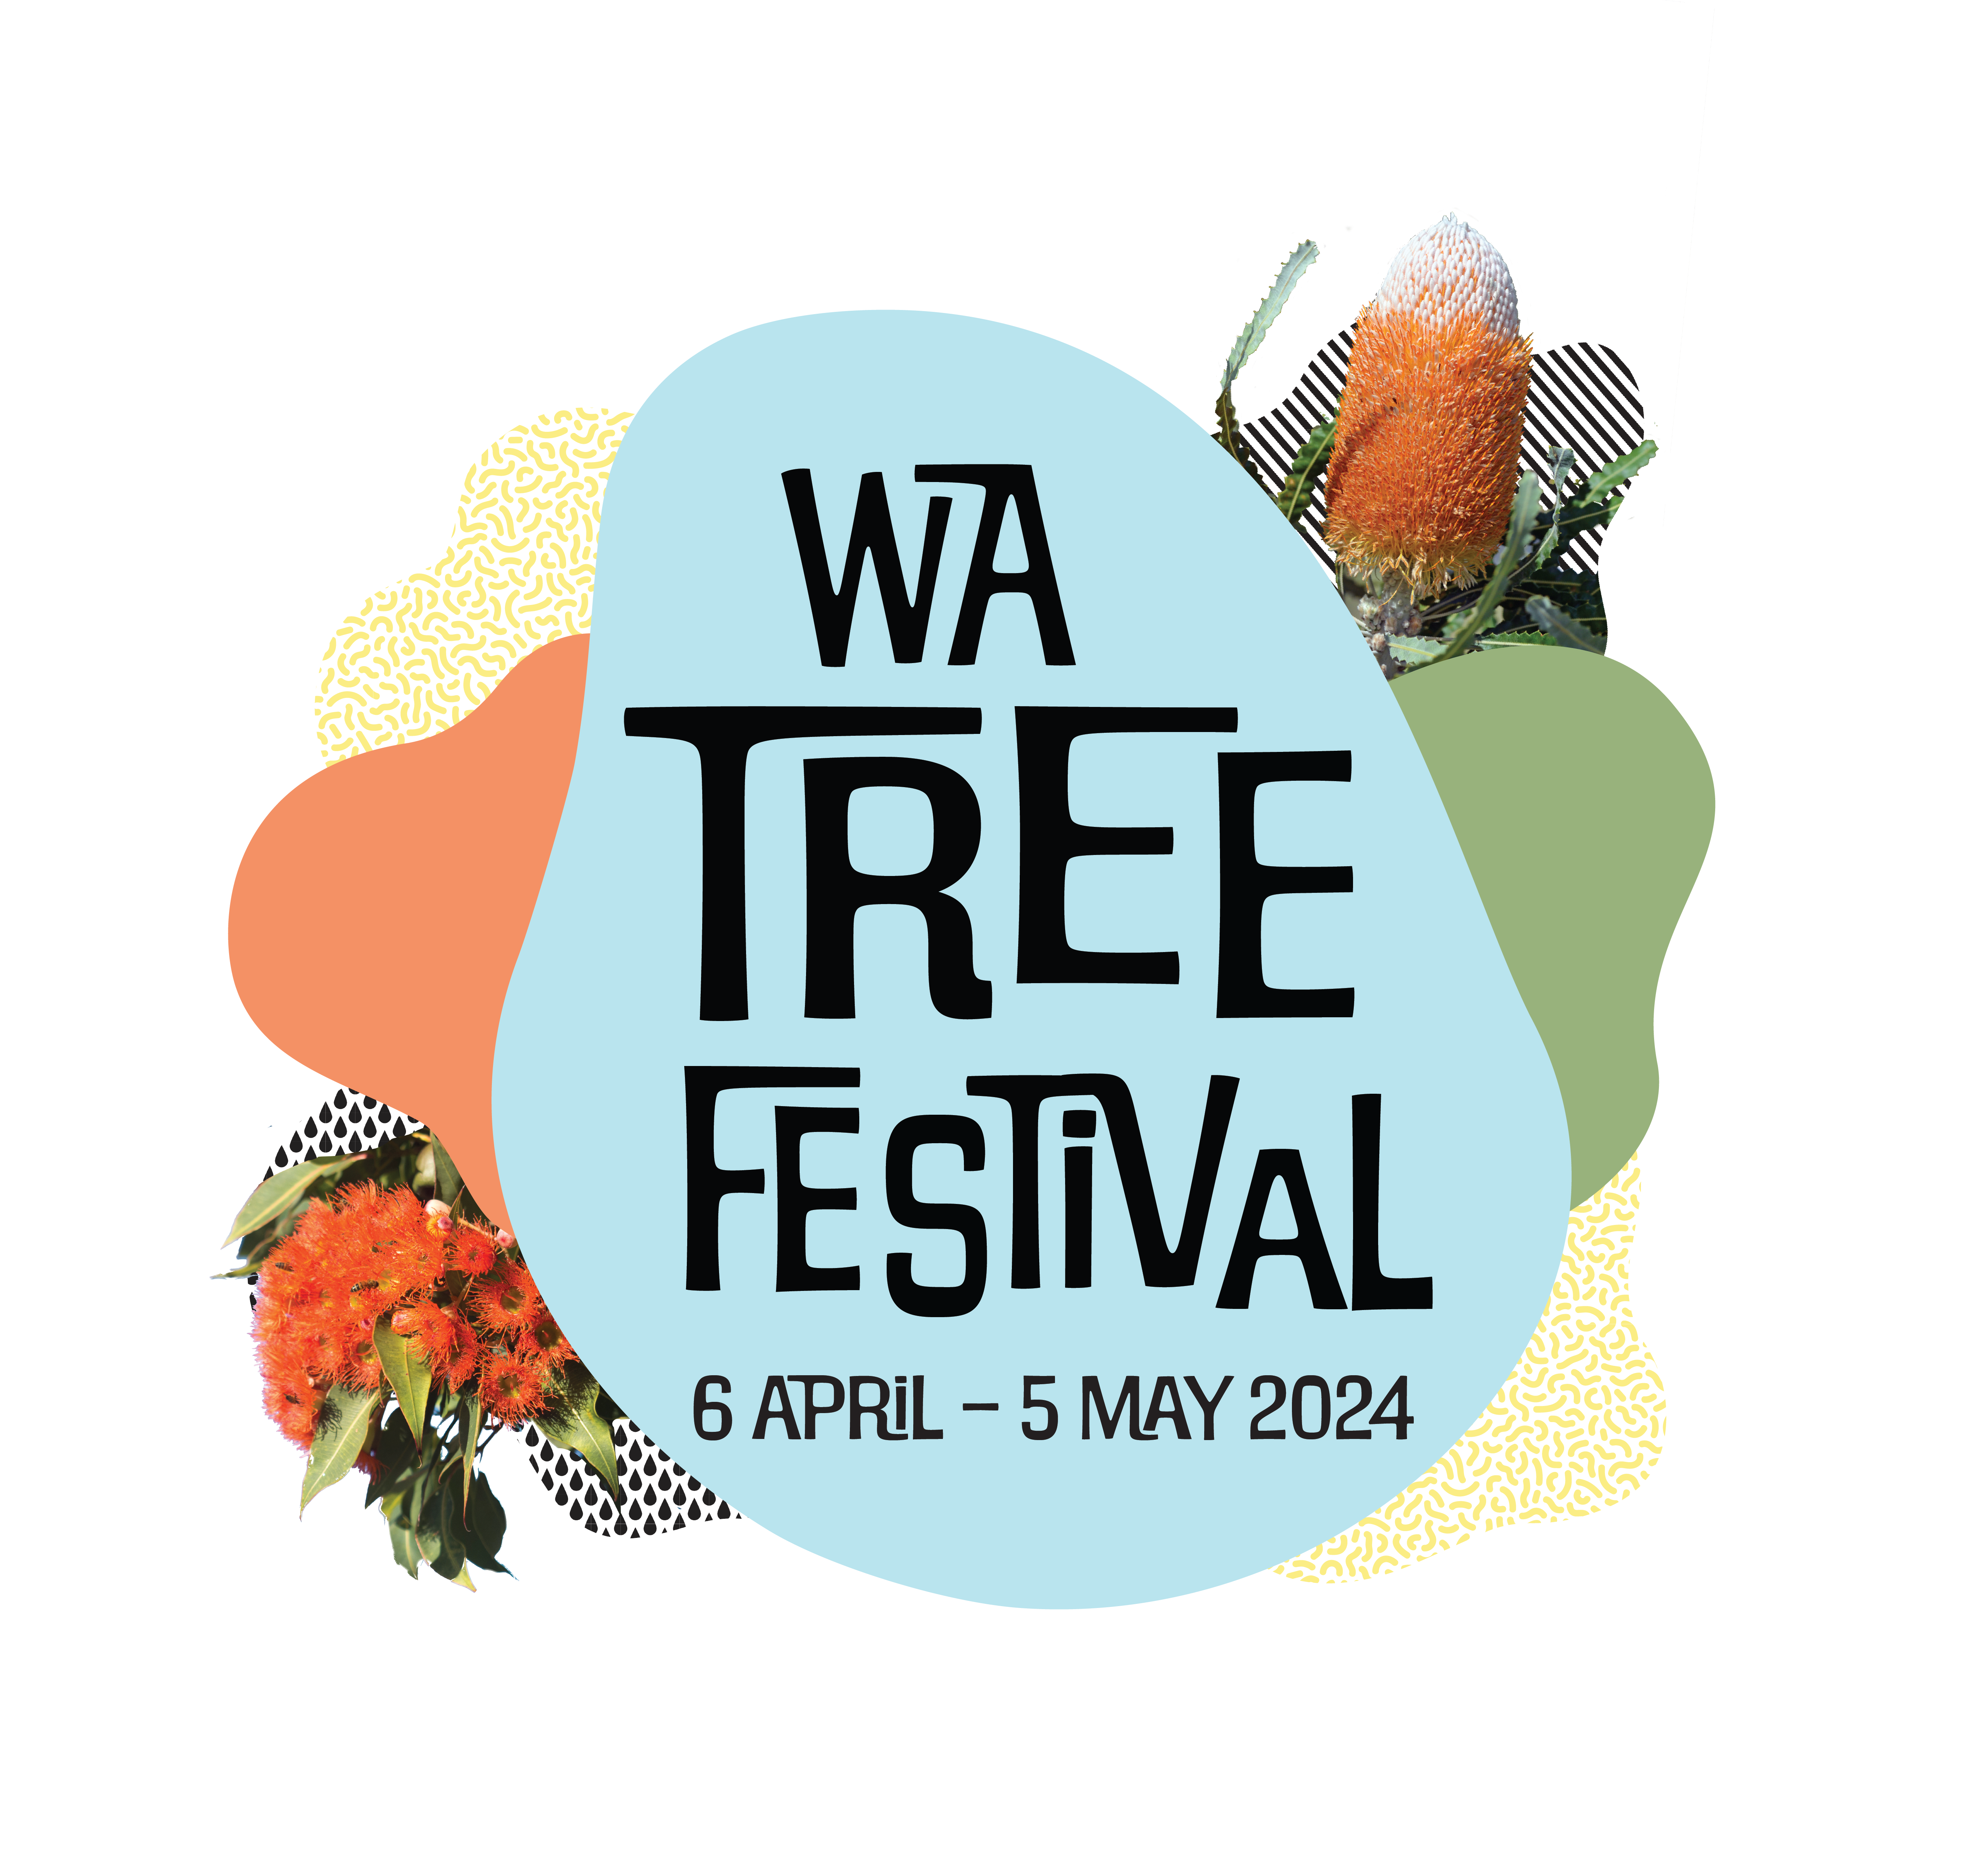 WA Tree Festival lockup